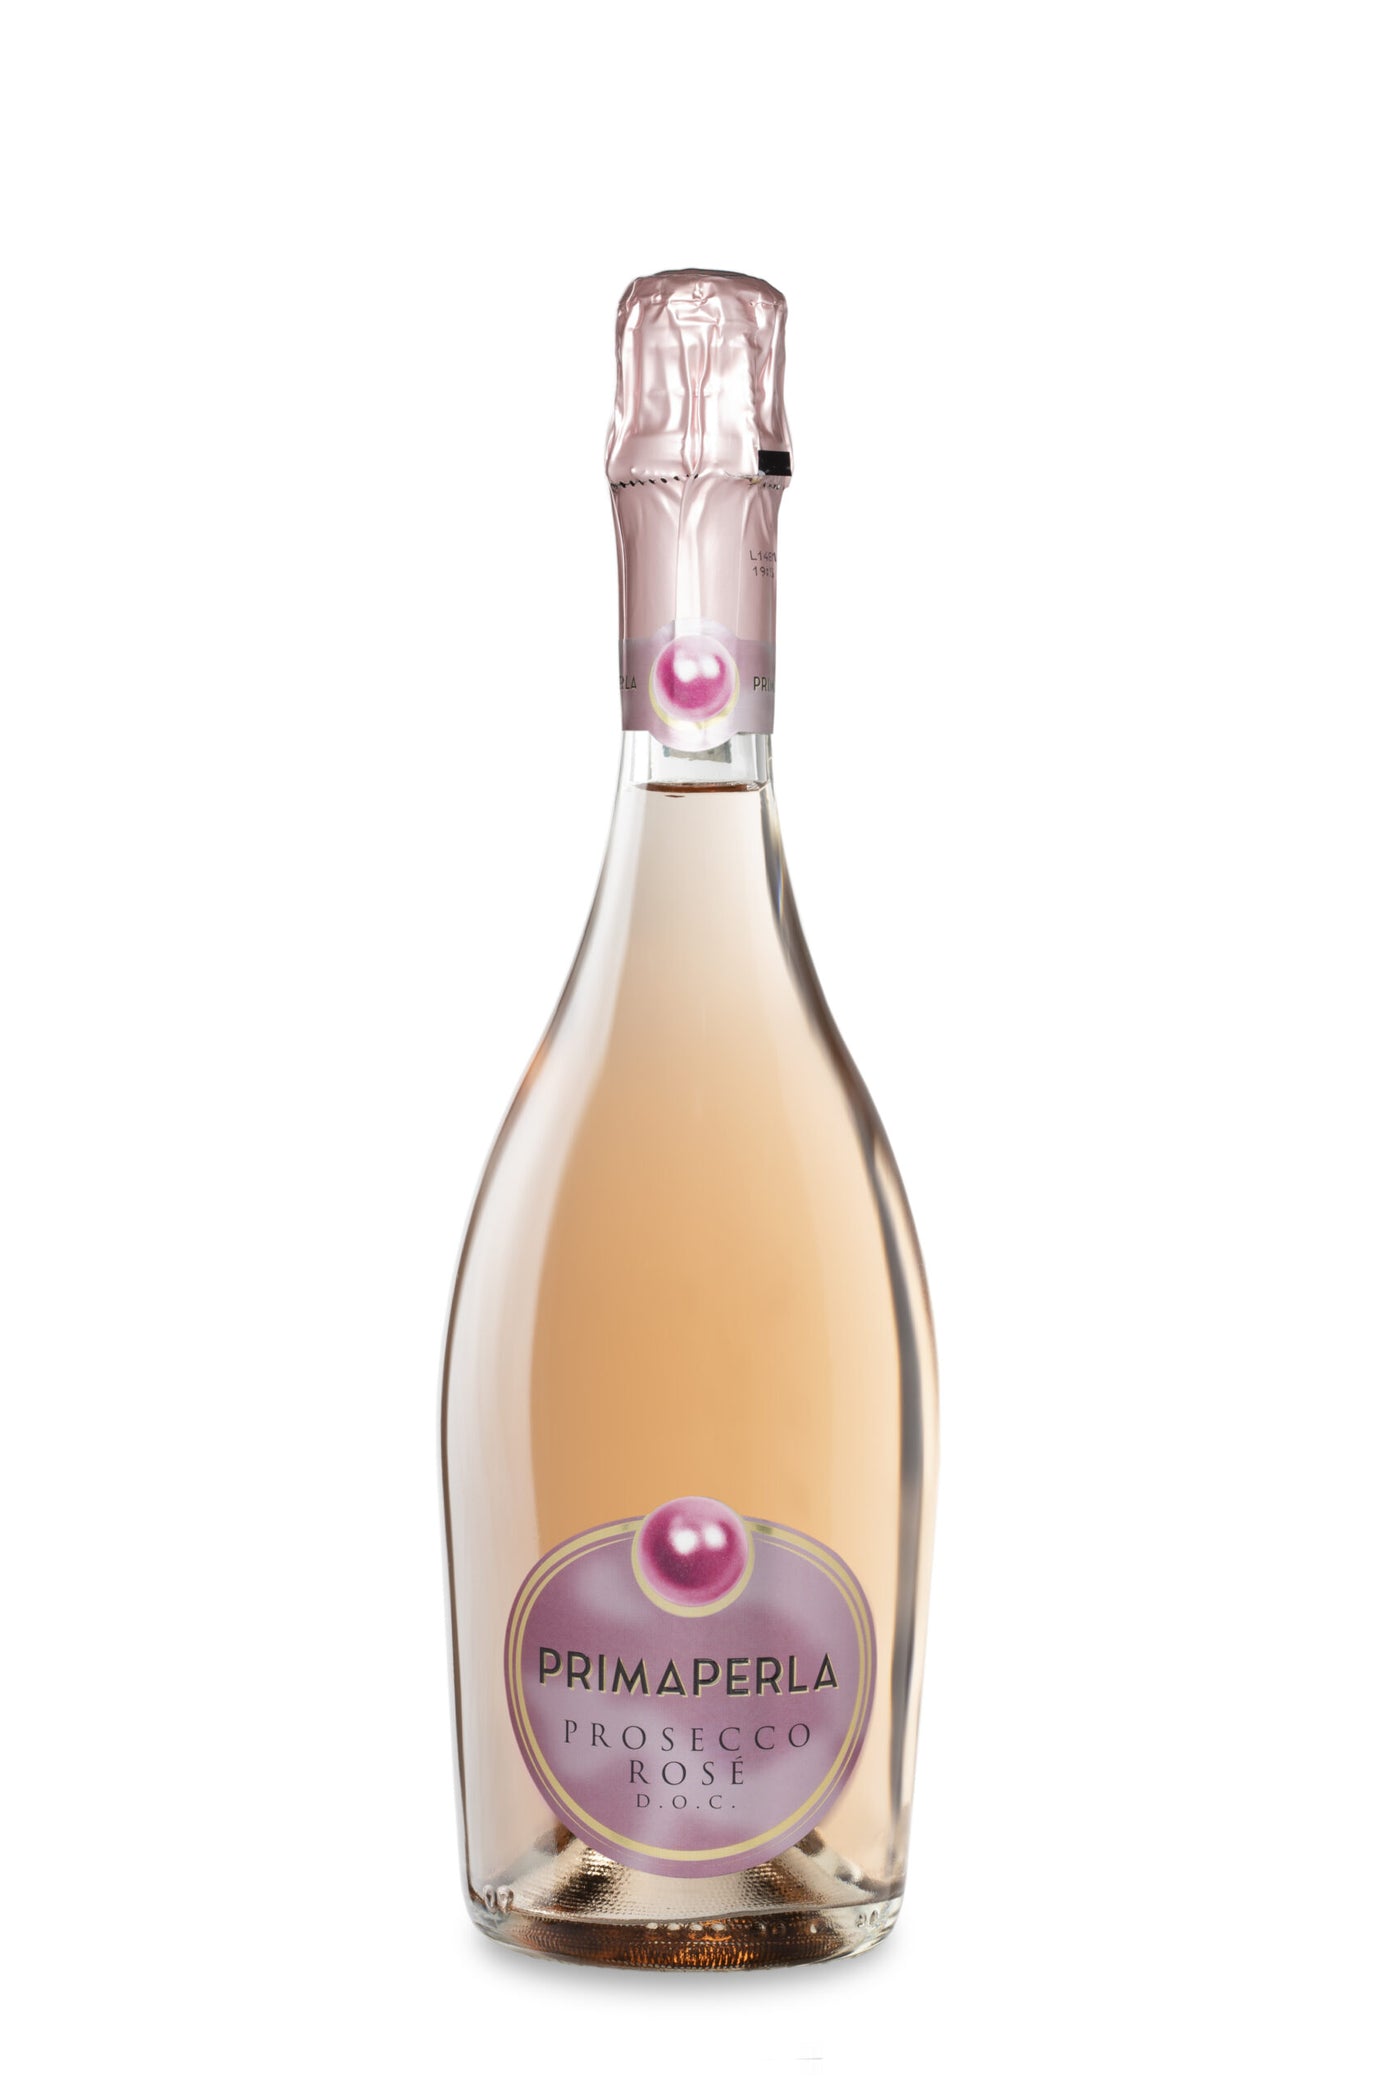 Prima Perla Prosecco Rose-bk wine depot corp